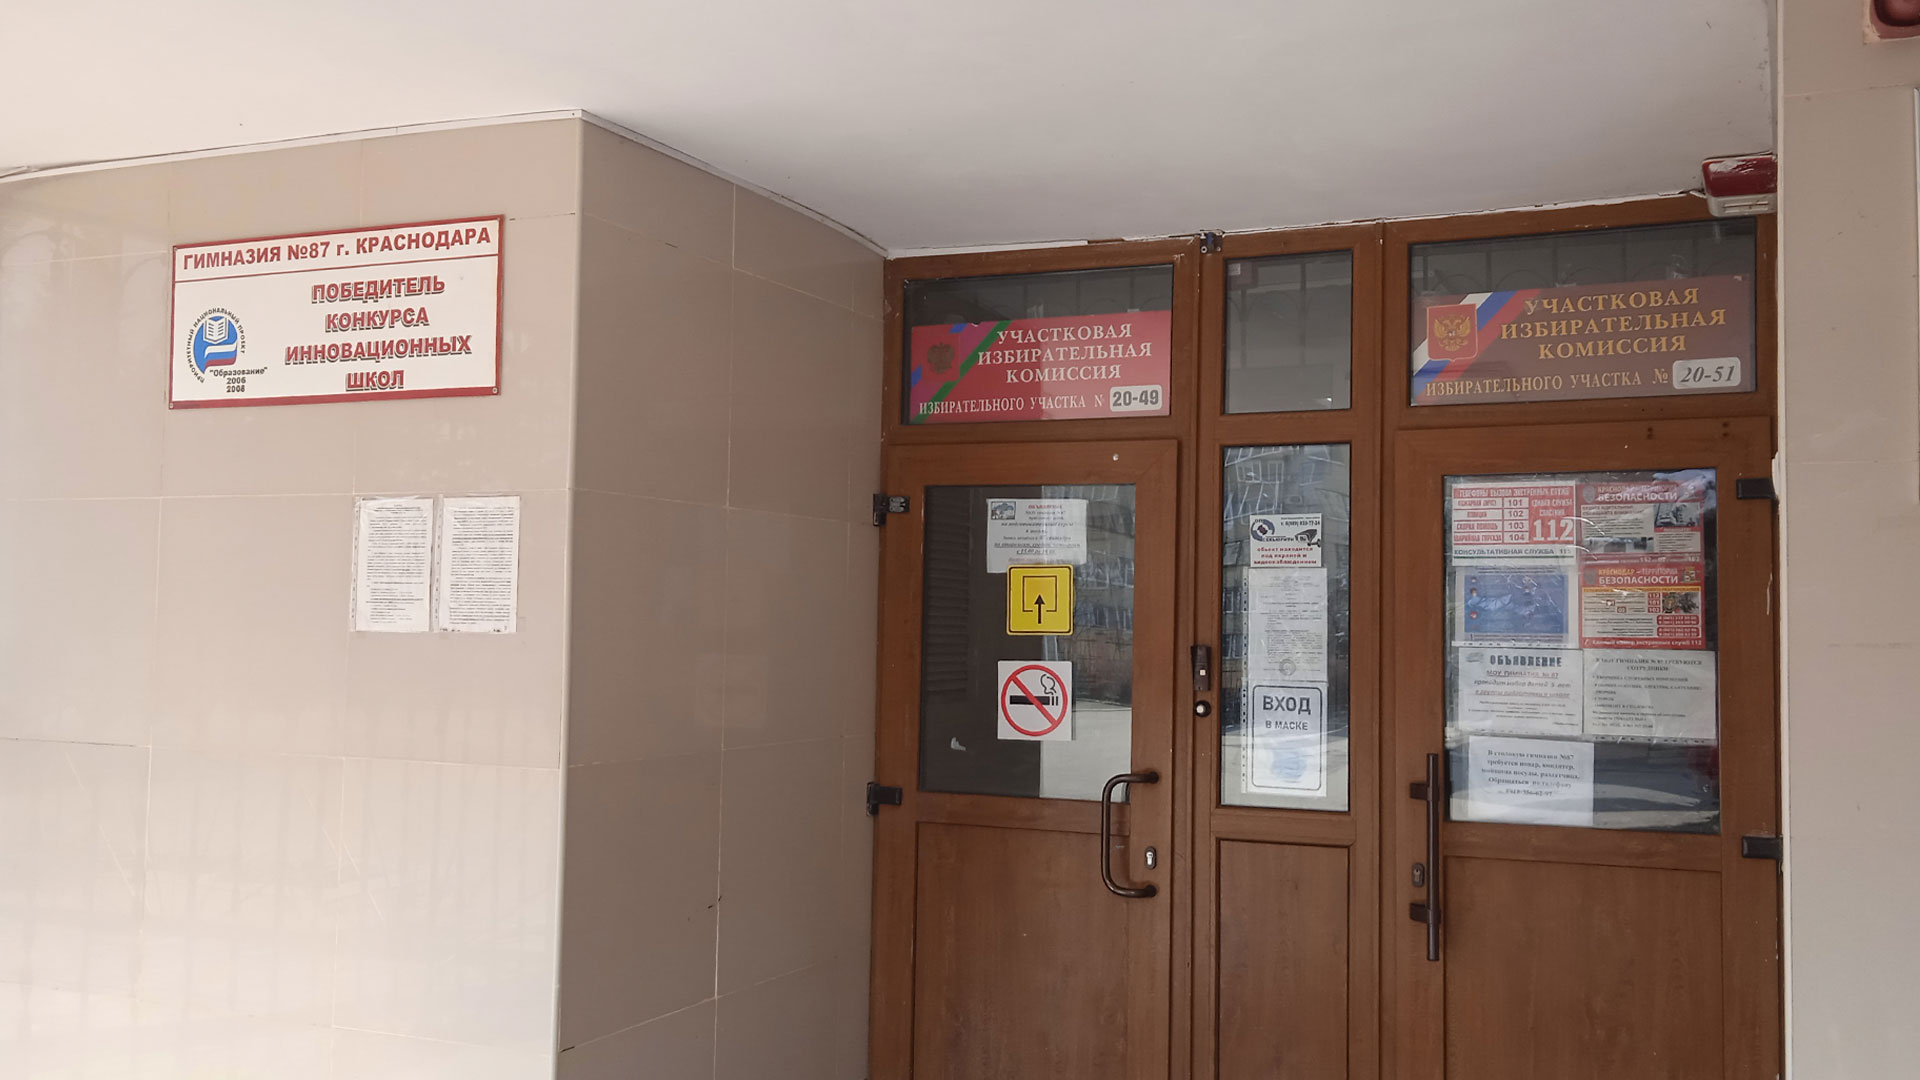 Входные двери в здание гимназии 87 г. Краснодар.